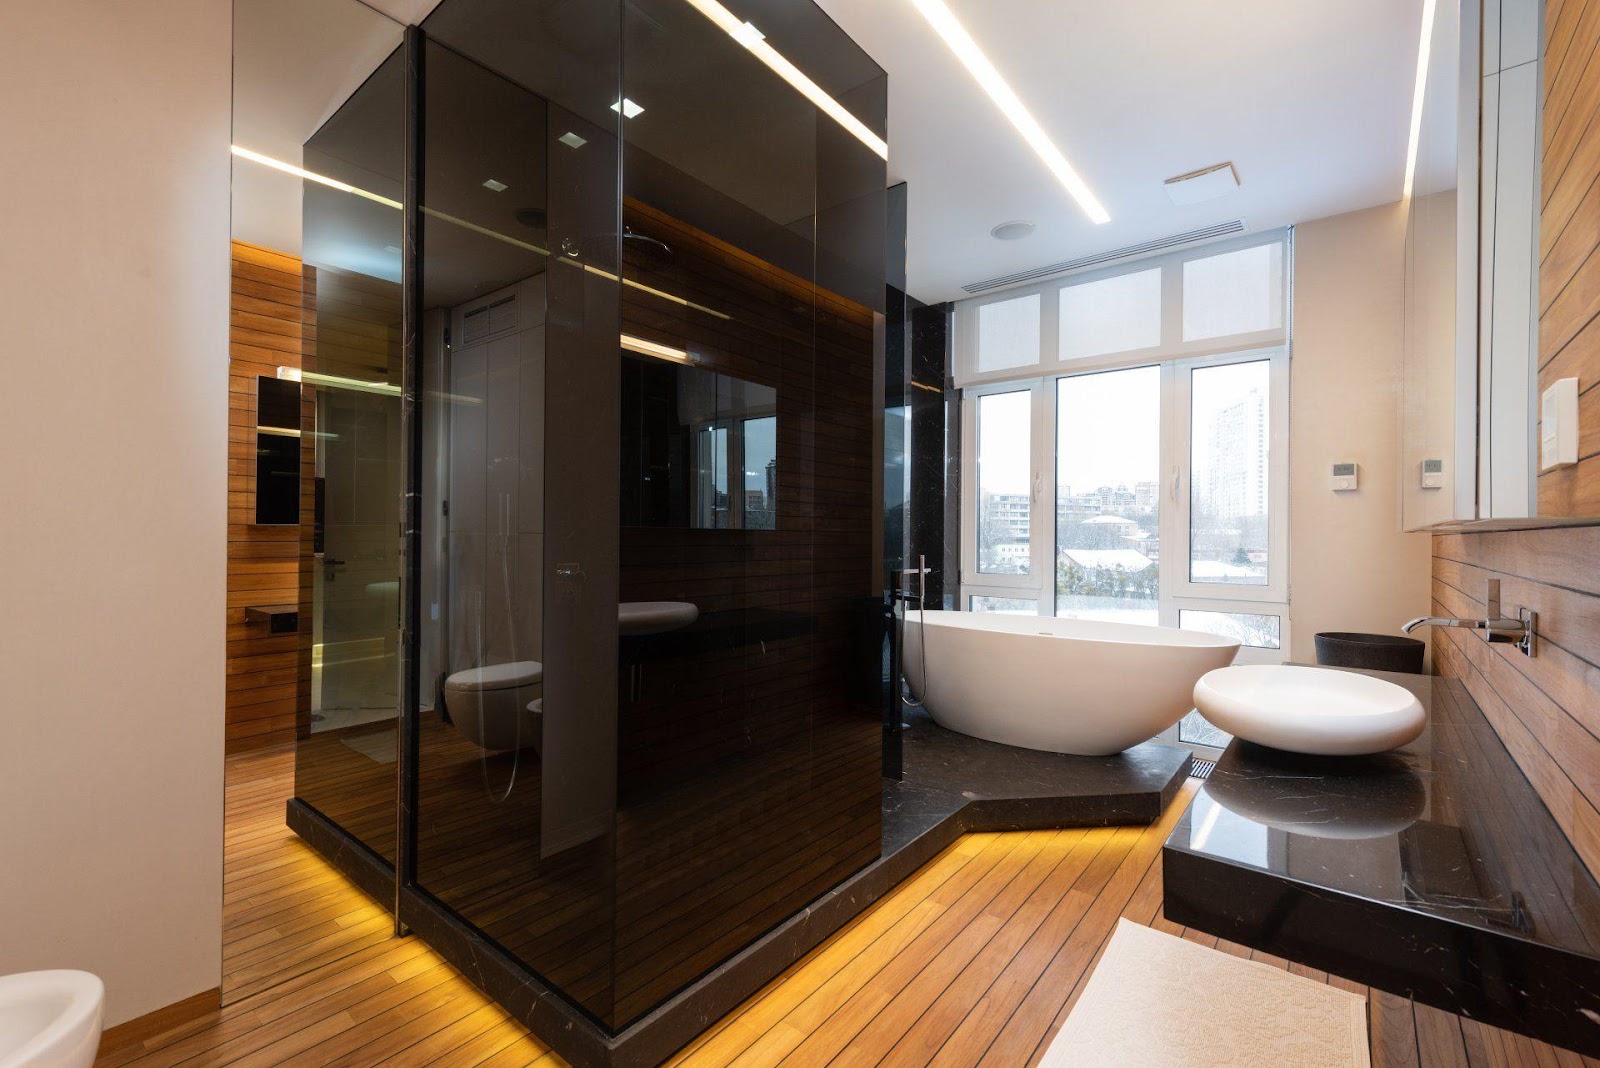 Uma imagem com interior, casa de banho, parede, chão

Descrição gerada automaticamente